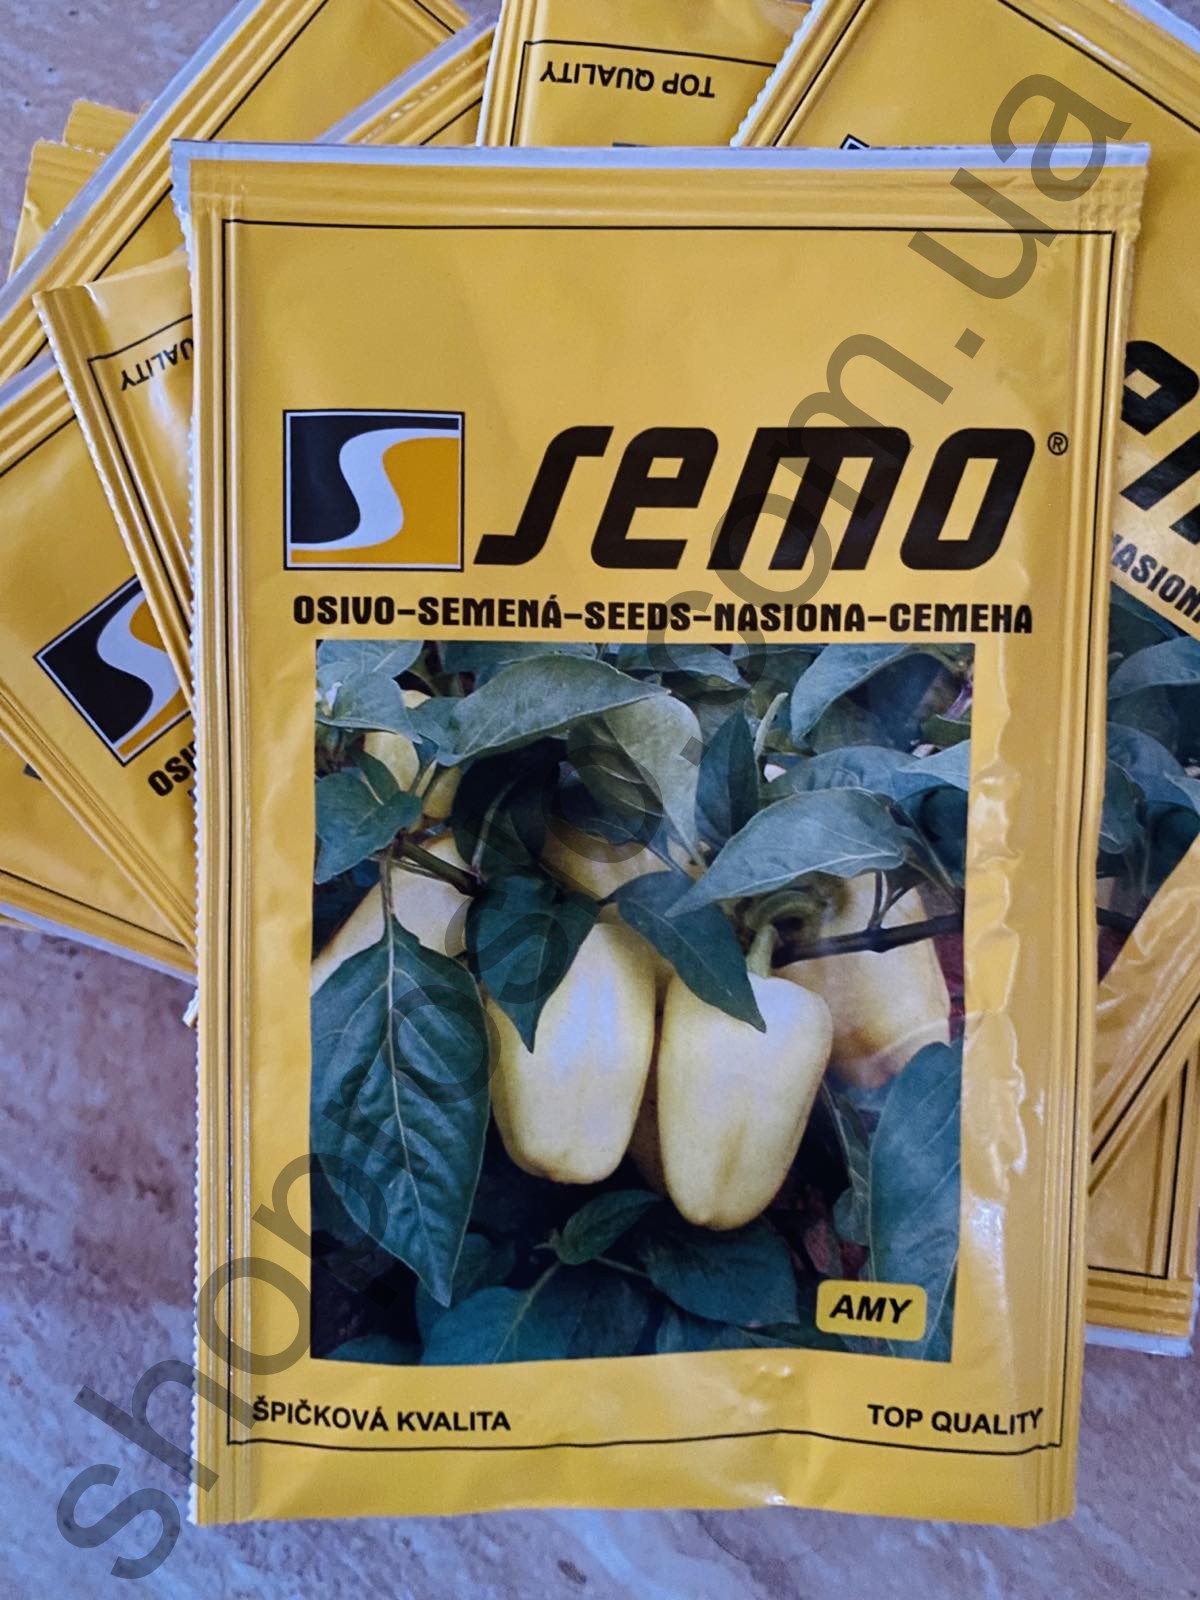 Семена перца Ами F1, ранний сорт, конический, "Semo" (Чехия), 5 000 шт